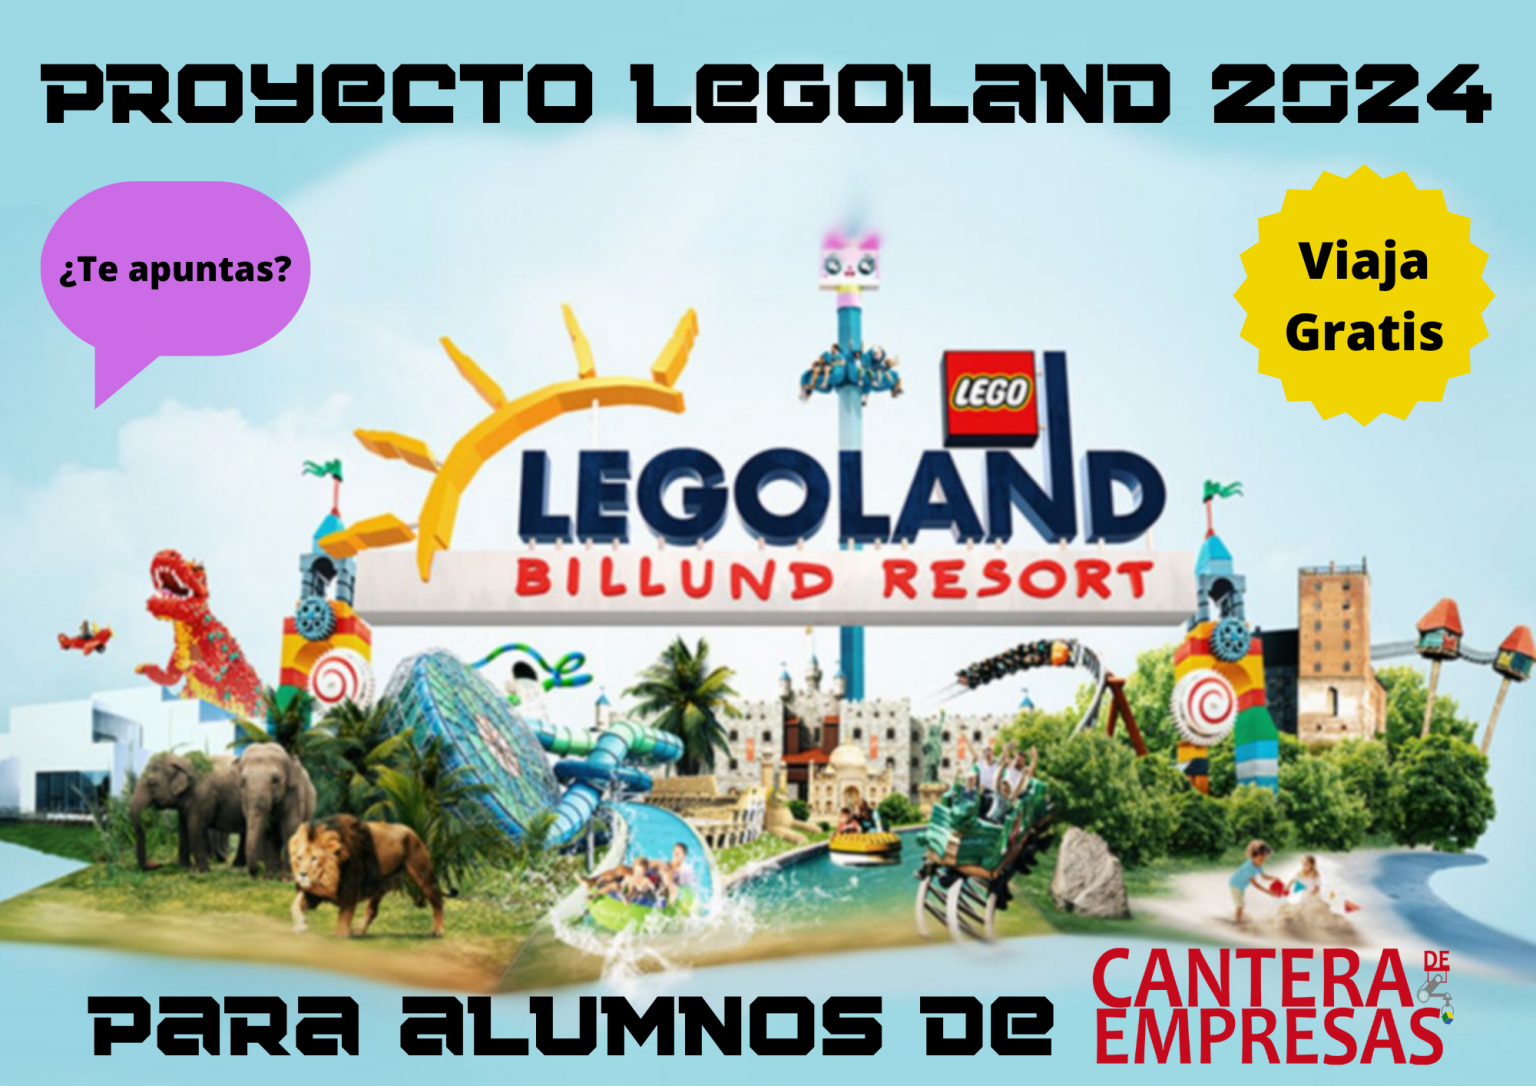 Proyecto Legoland 2024 Cantera de empresas